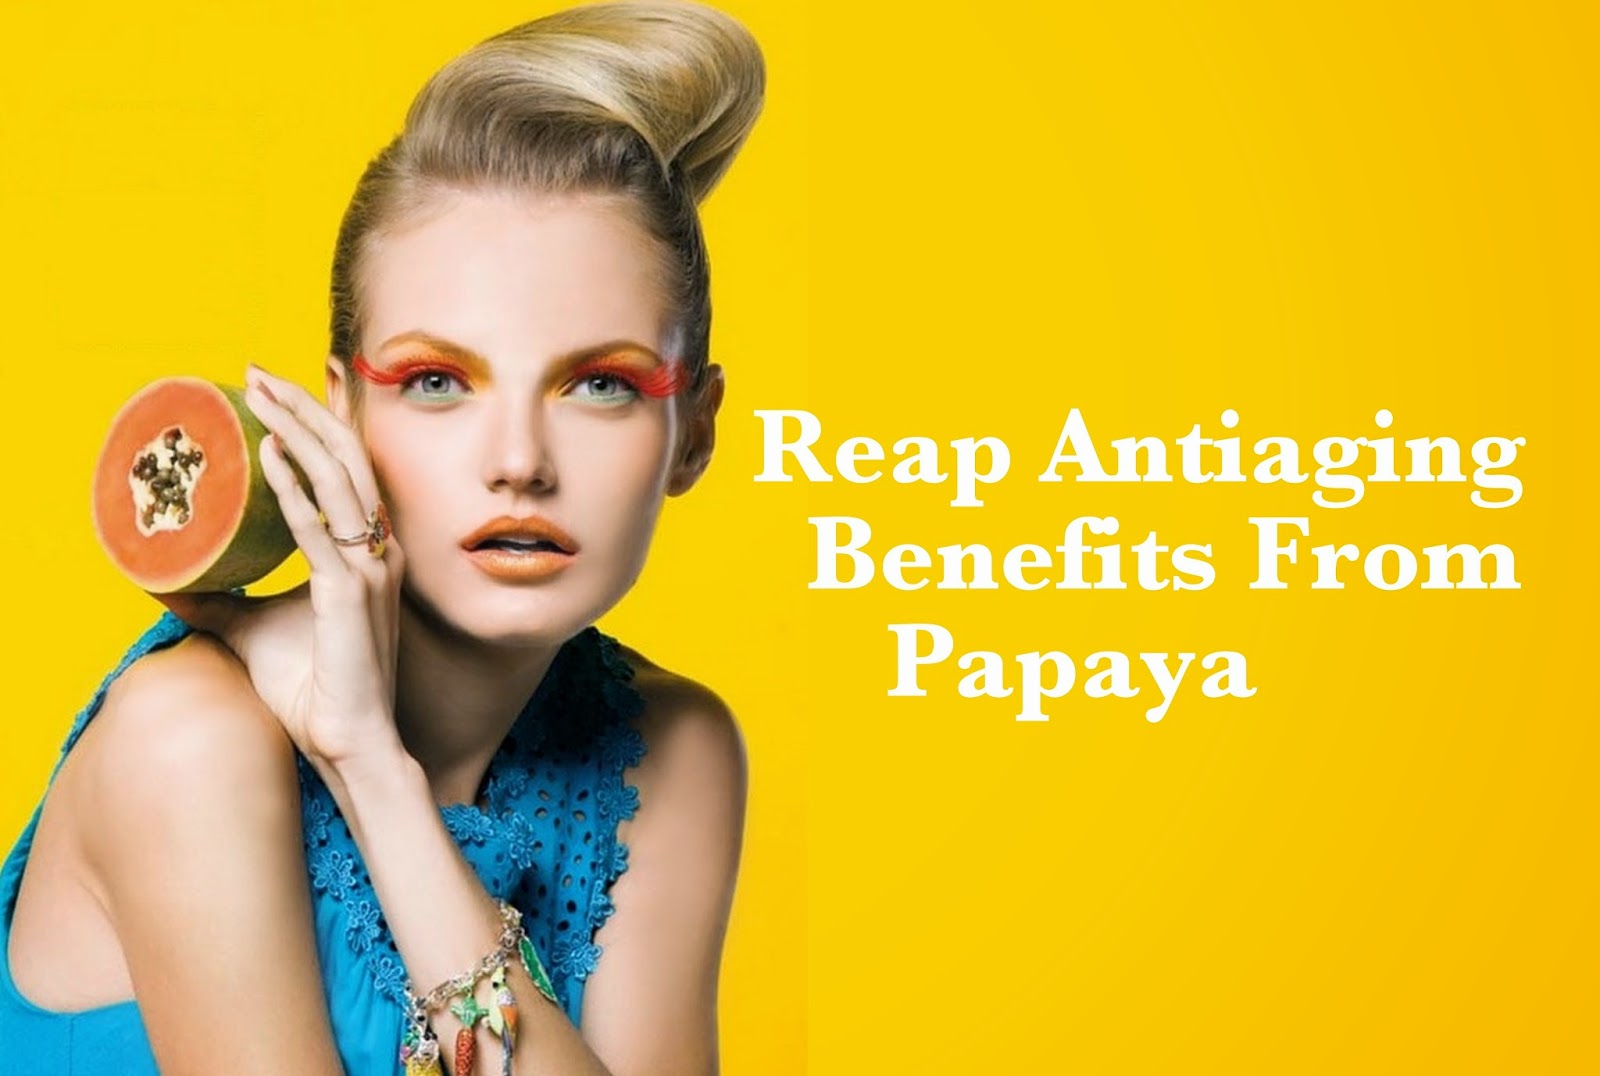 Skin Benefits Of Papaya